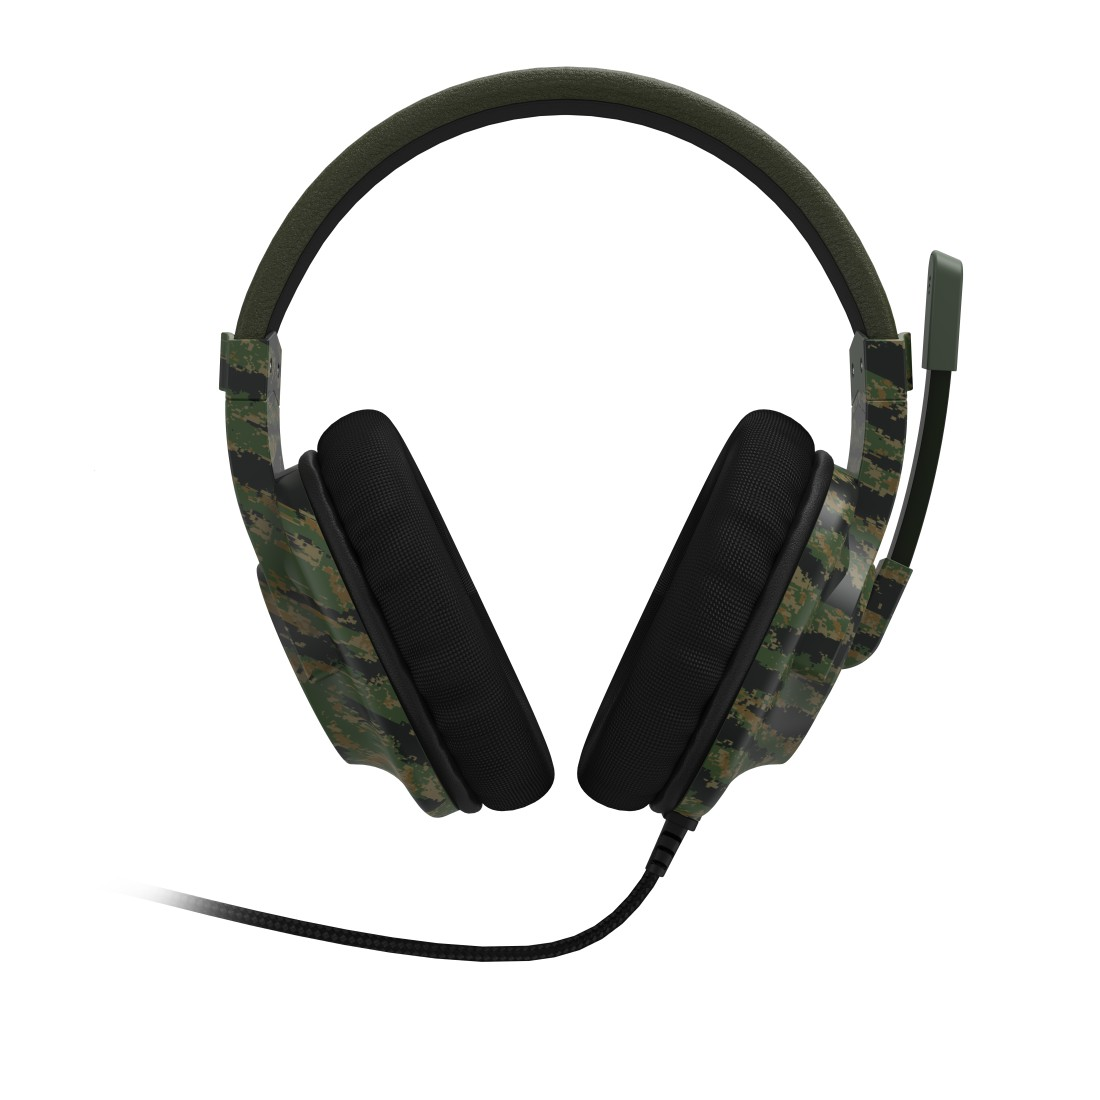 SoundZ Gaming uRage 330, Schwarz/Grün Over-ear Headset